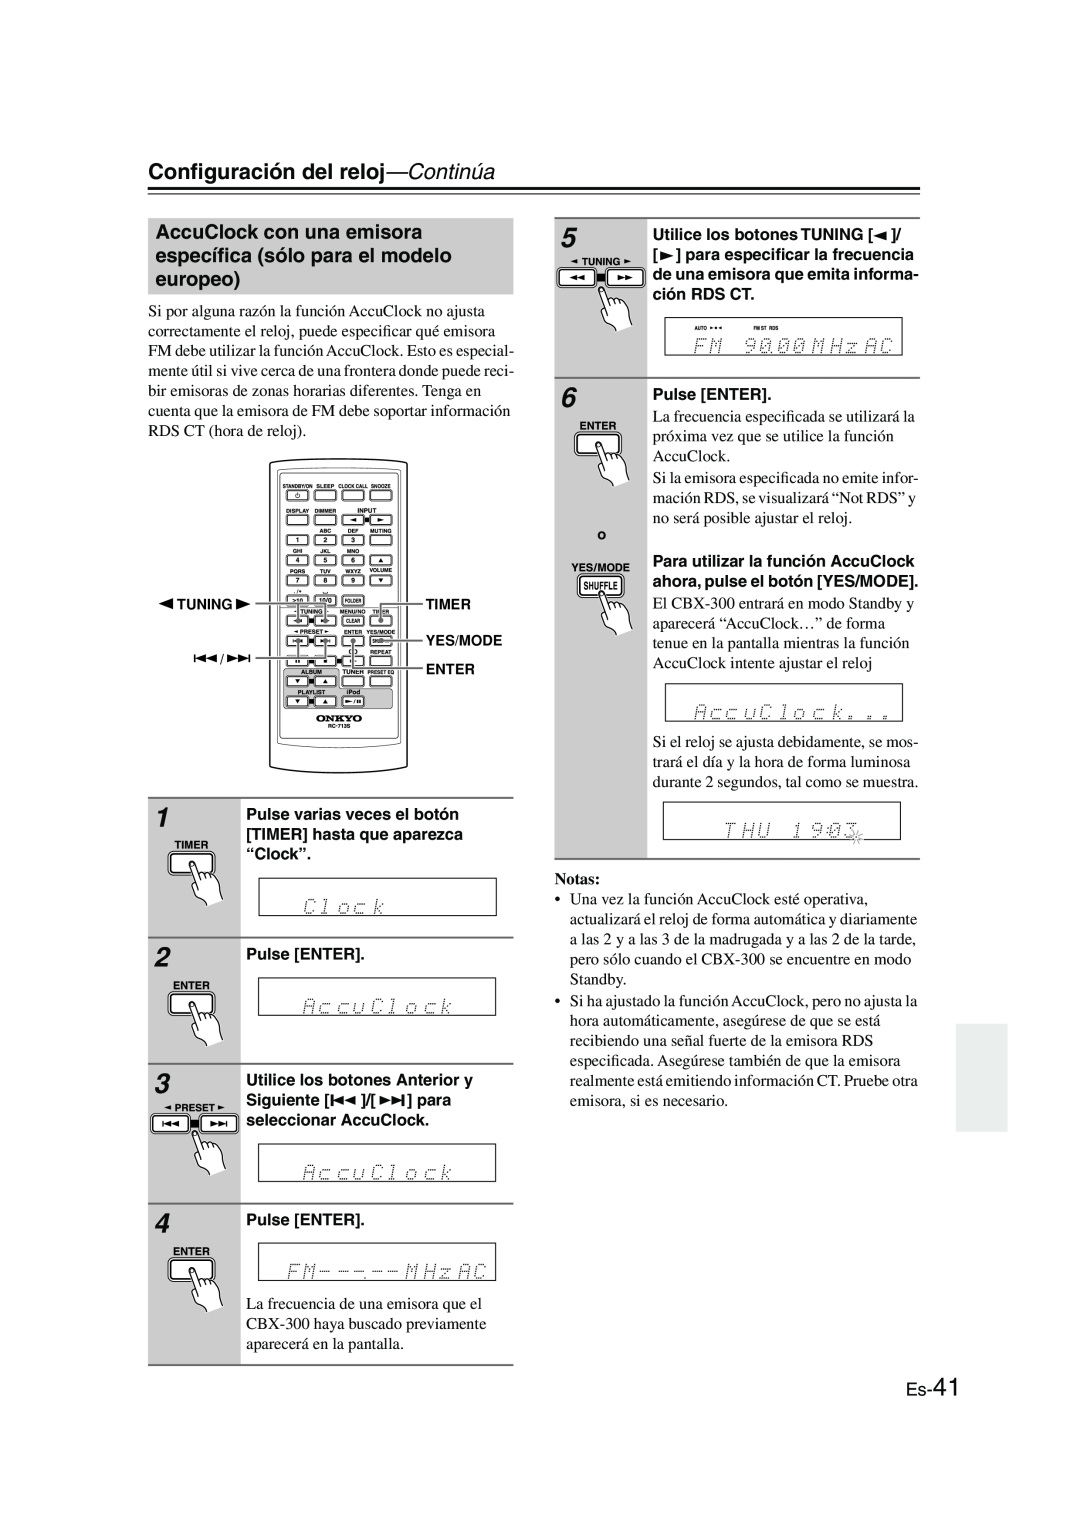 Onkyo CBX-300 instruction manual Conﬁguración del reloj—Continúa, Es-41, Pulse ENTER, Notas 